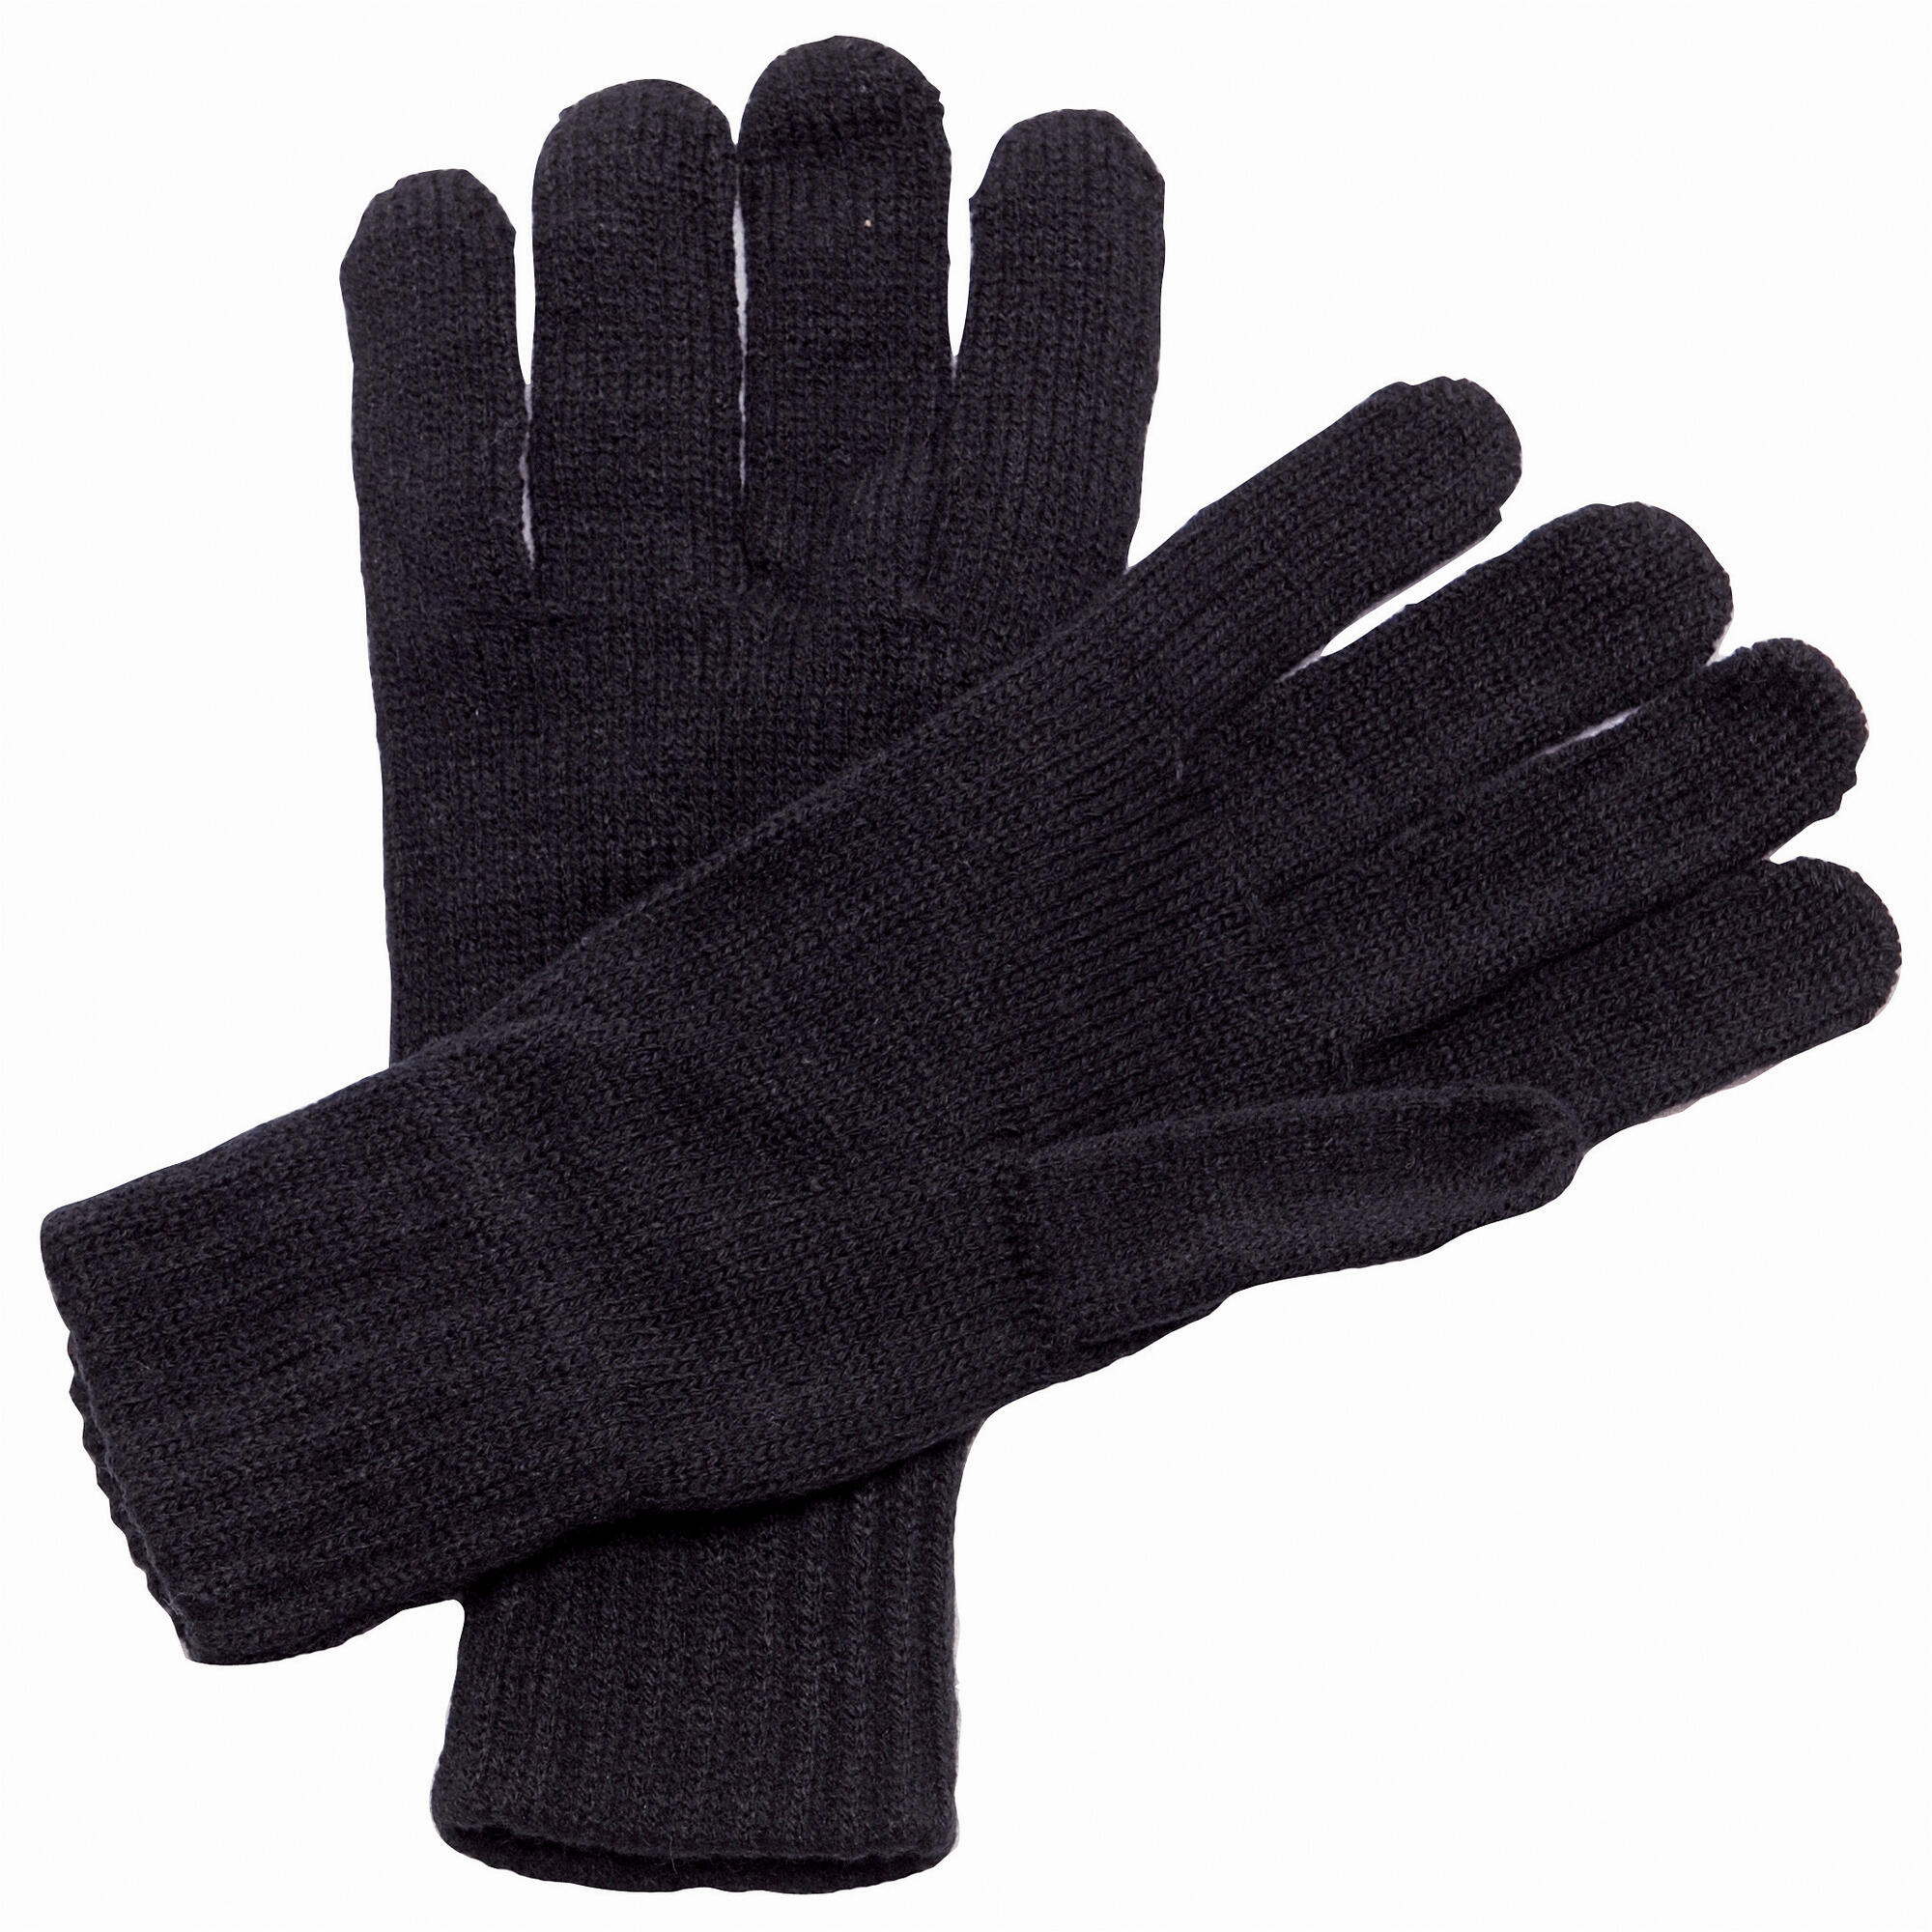 Unisex Knitted Winter Gloves (Black) 1/4